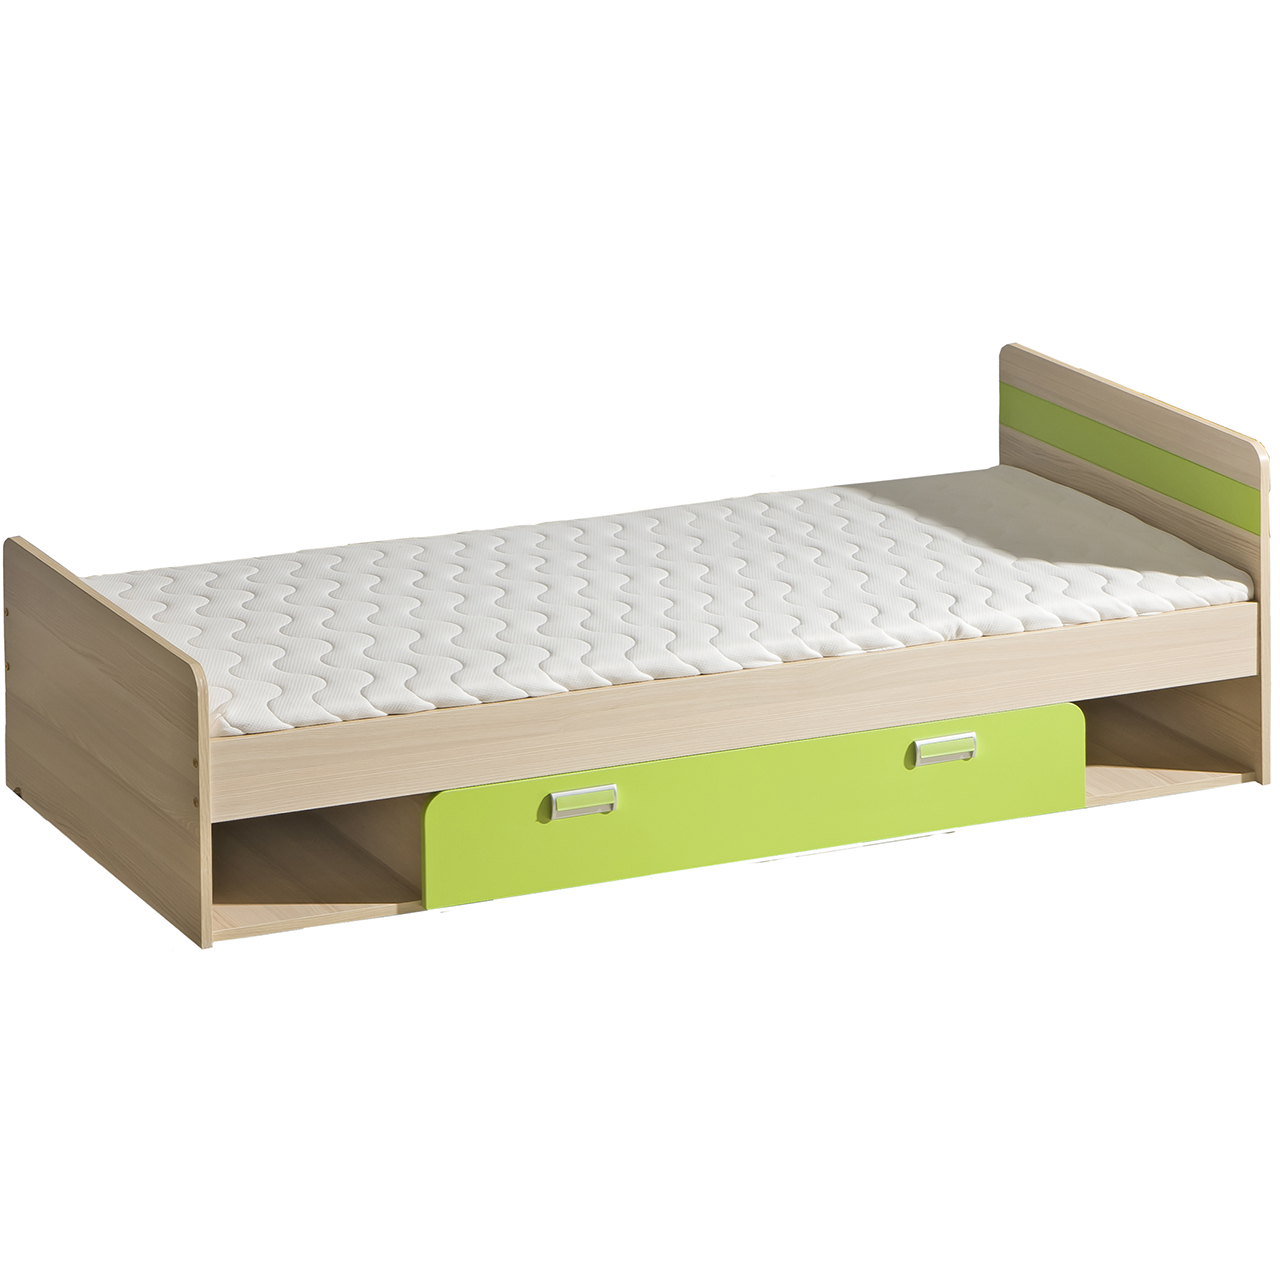 Bed with storage LOREN LR13 ash / green